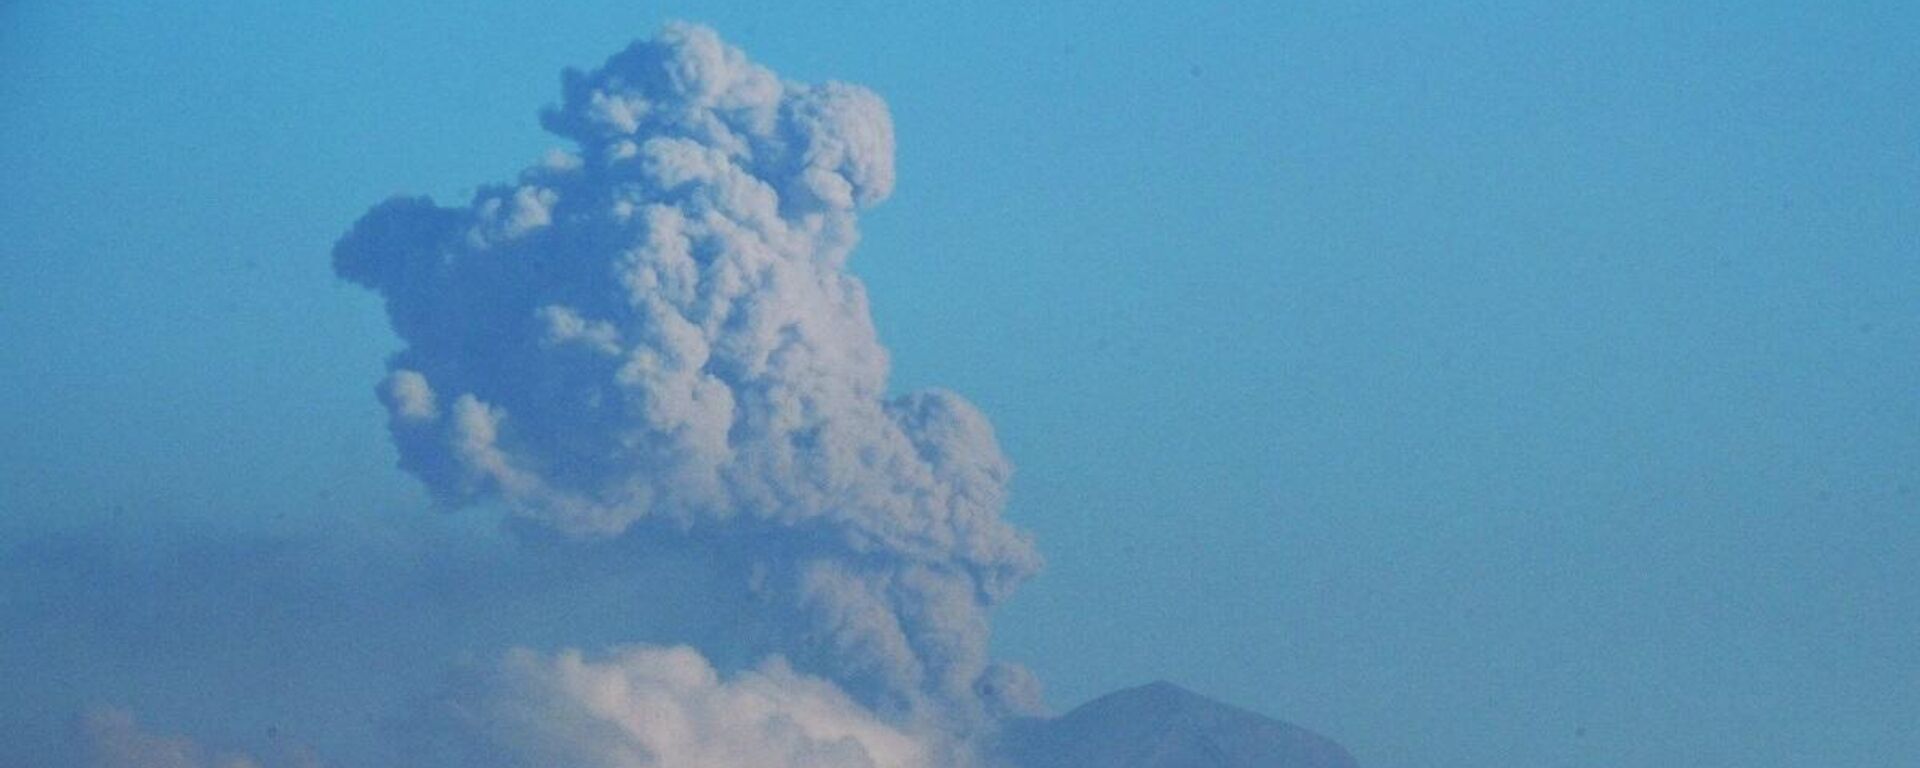 Meksika’daki Popocatepetl Yanardağı’nda son 24 saatte 7 patlama gerçekleşti. Yaşanan patlamalar çevredeki bazı yerleşim birimlerinde kül yağışına neden oldu. - Sputnik Türkiye, 1920, 29.04.2023